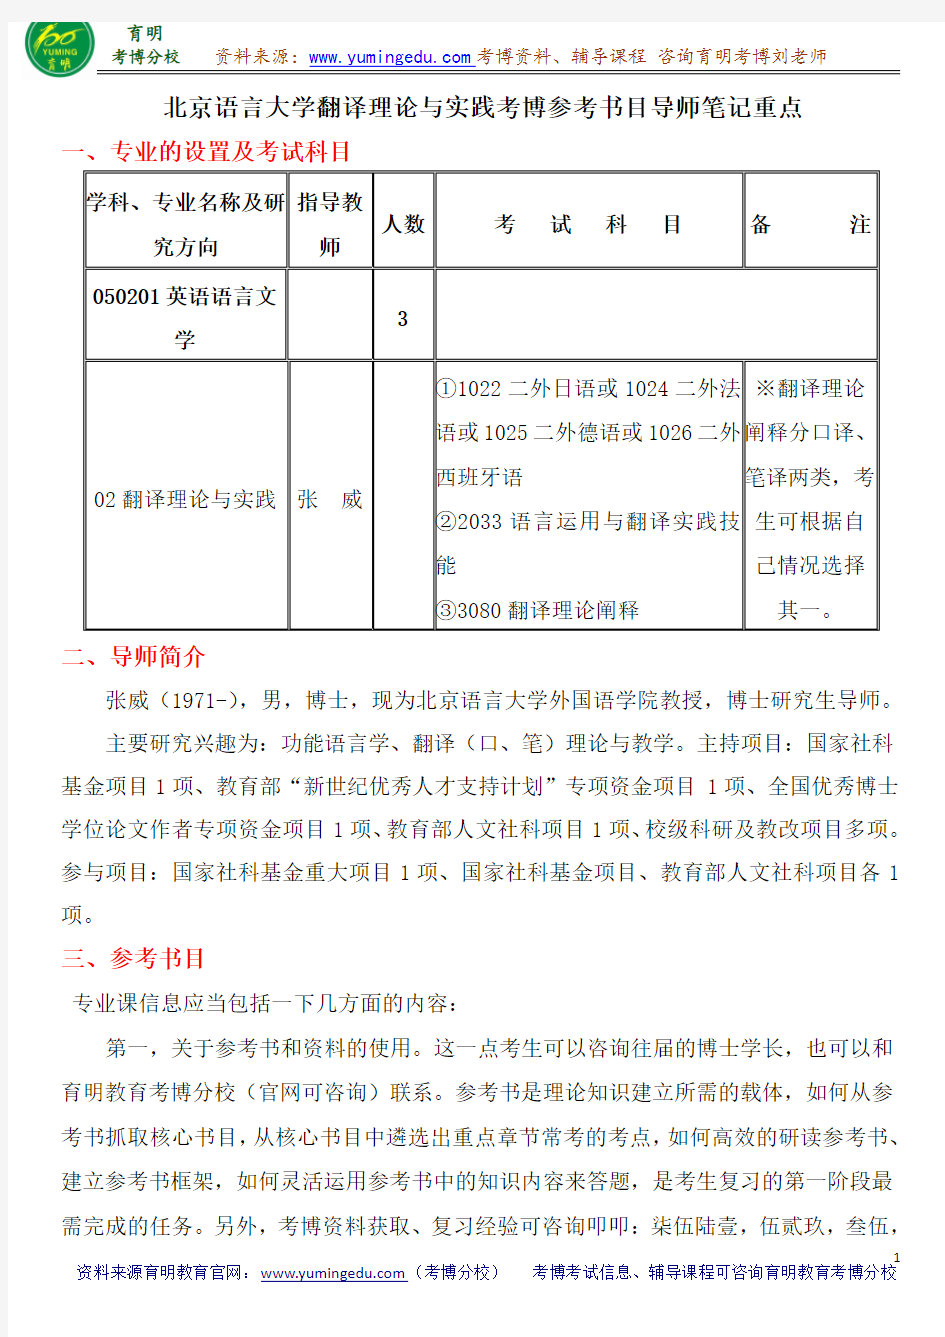 北京语言大学翻译理论与实践考博参考书目导师笔记重点